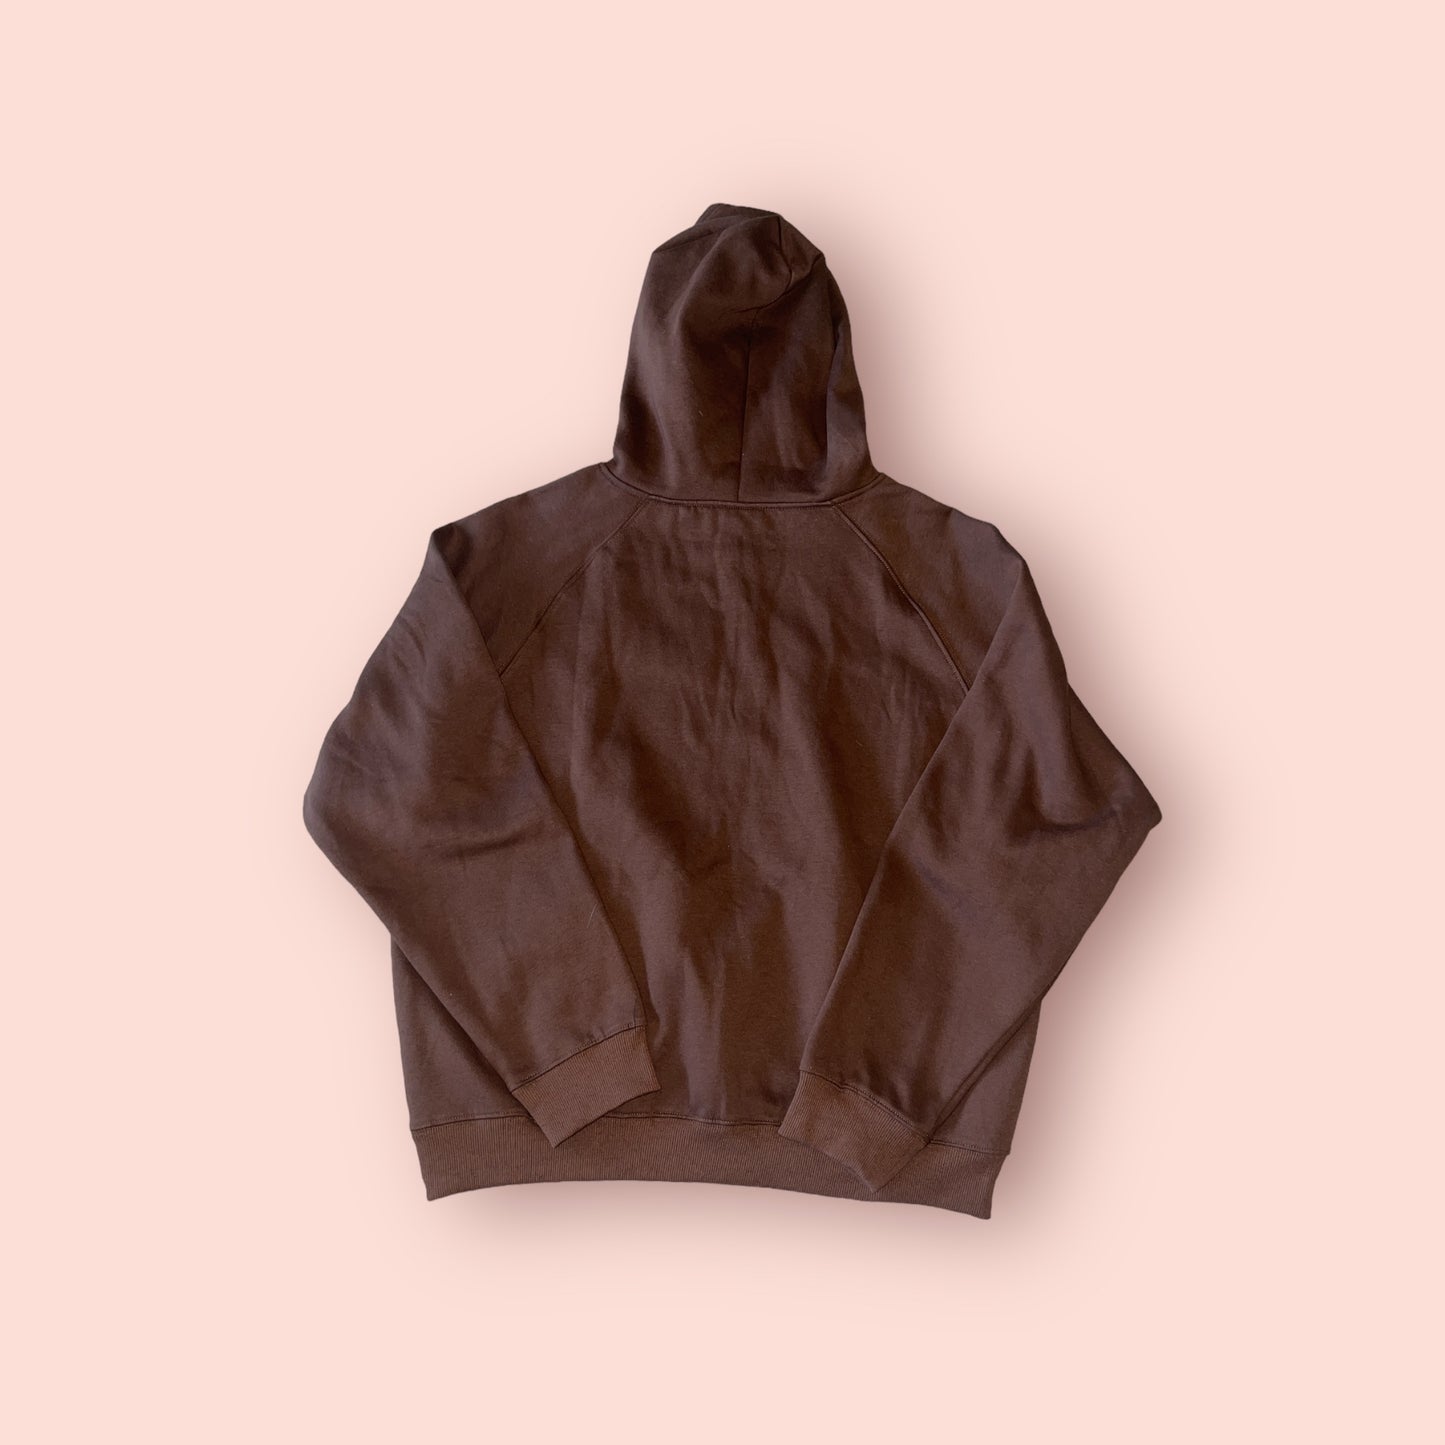 Brown hoodie